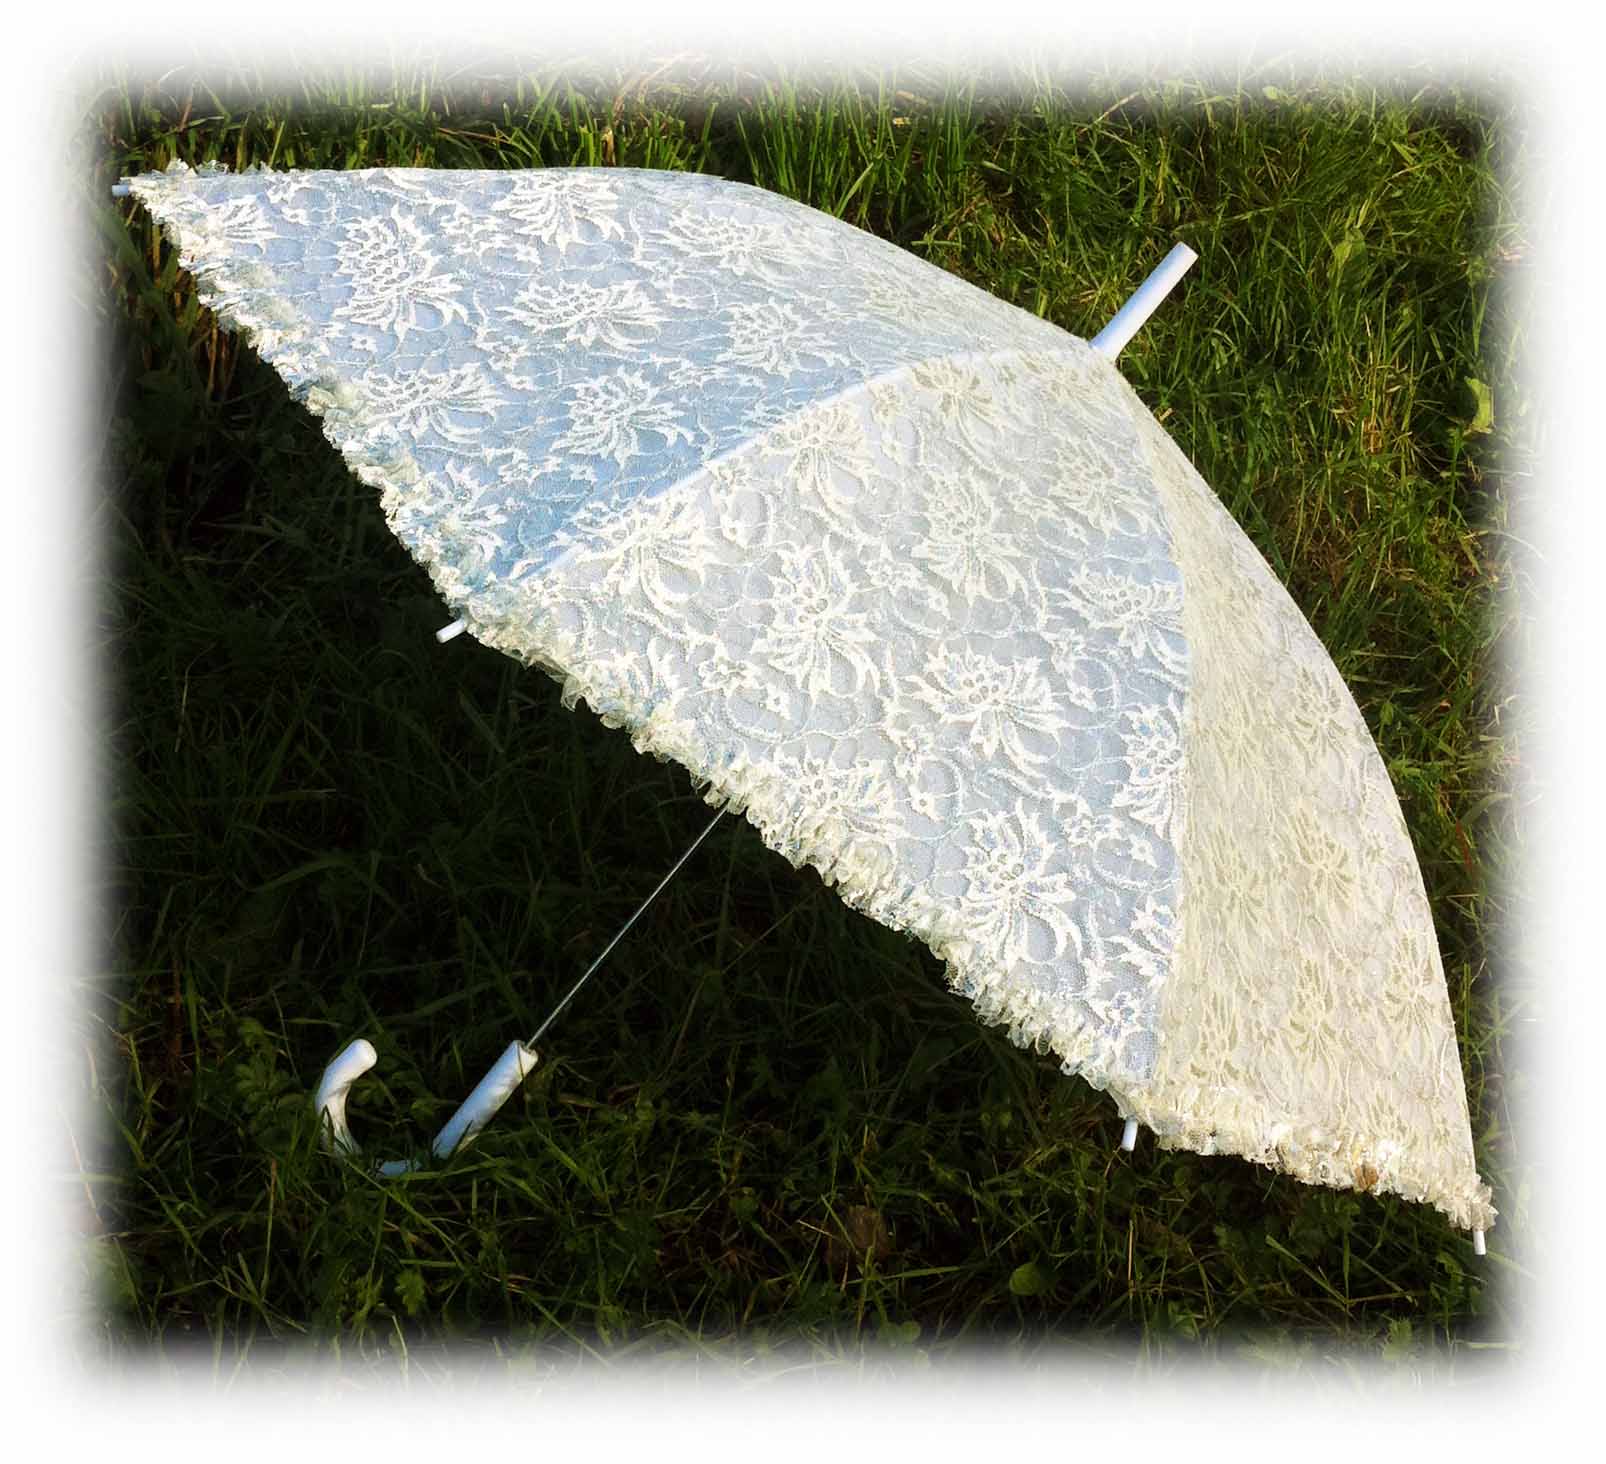 Кружевной свадебный зонт айвори, модель Луиза